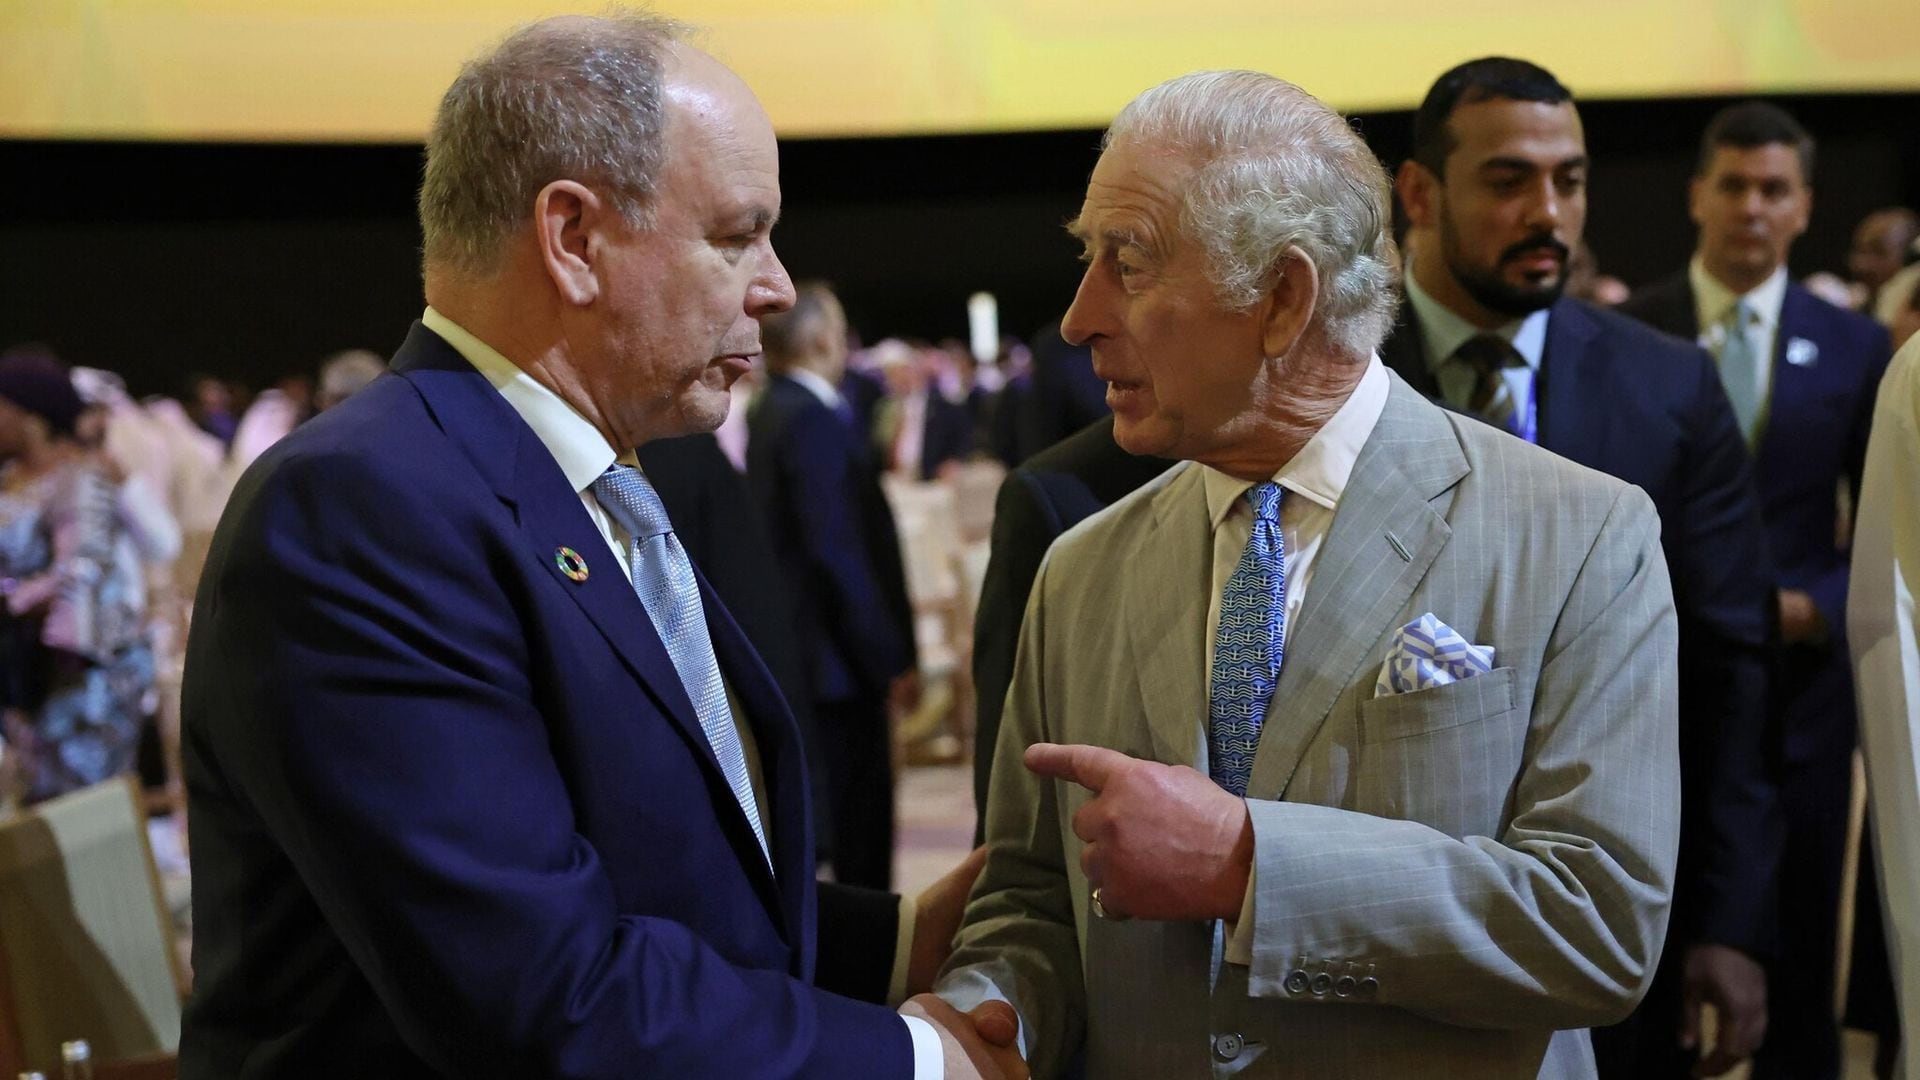 El príncipe Alberto de Mónaco envía un mensaje de apoyo al rey Carlos III